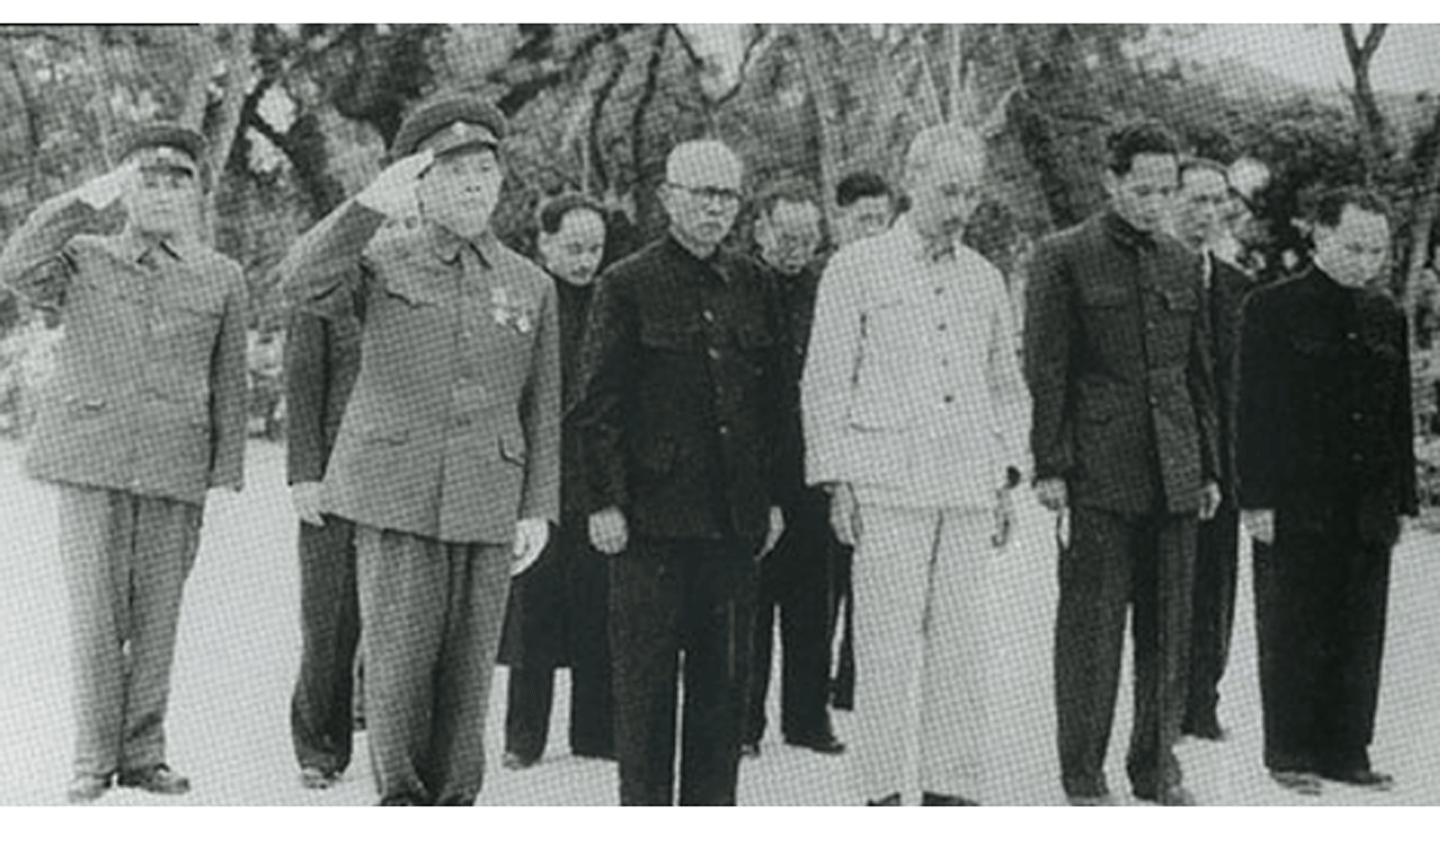 Chủ tịch Hồ Chí Minh cùng các đồng chí lãnh đạo Đảng, Nhà nước viếng các liệt sĩ tại Nghĩa trang Mai Dịch, Hà Nội, ngày 31/12/1954 - Ảnh: Bảo tàng Lịch sử quốc gia